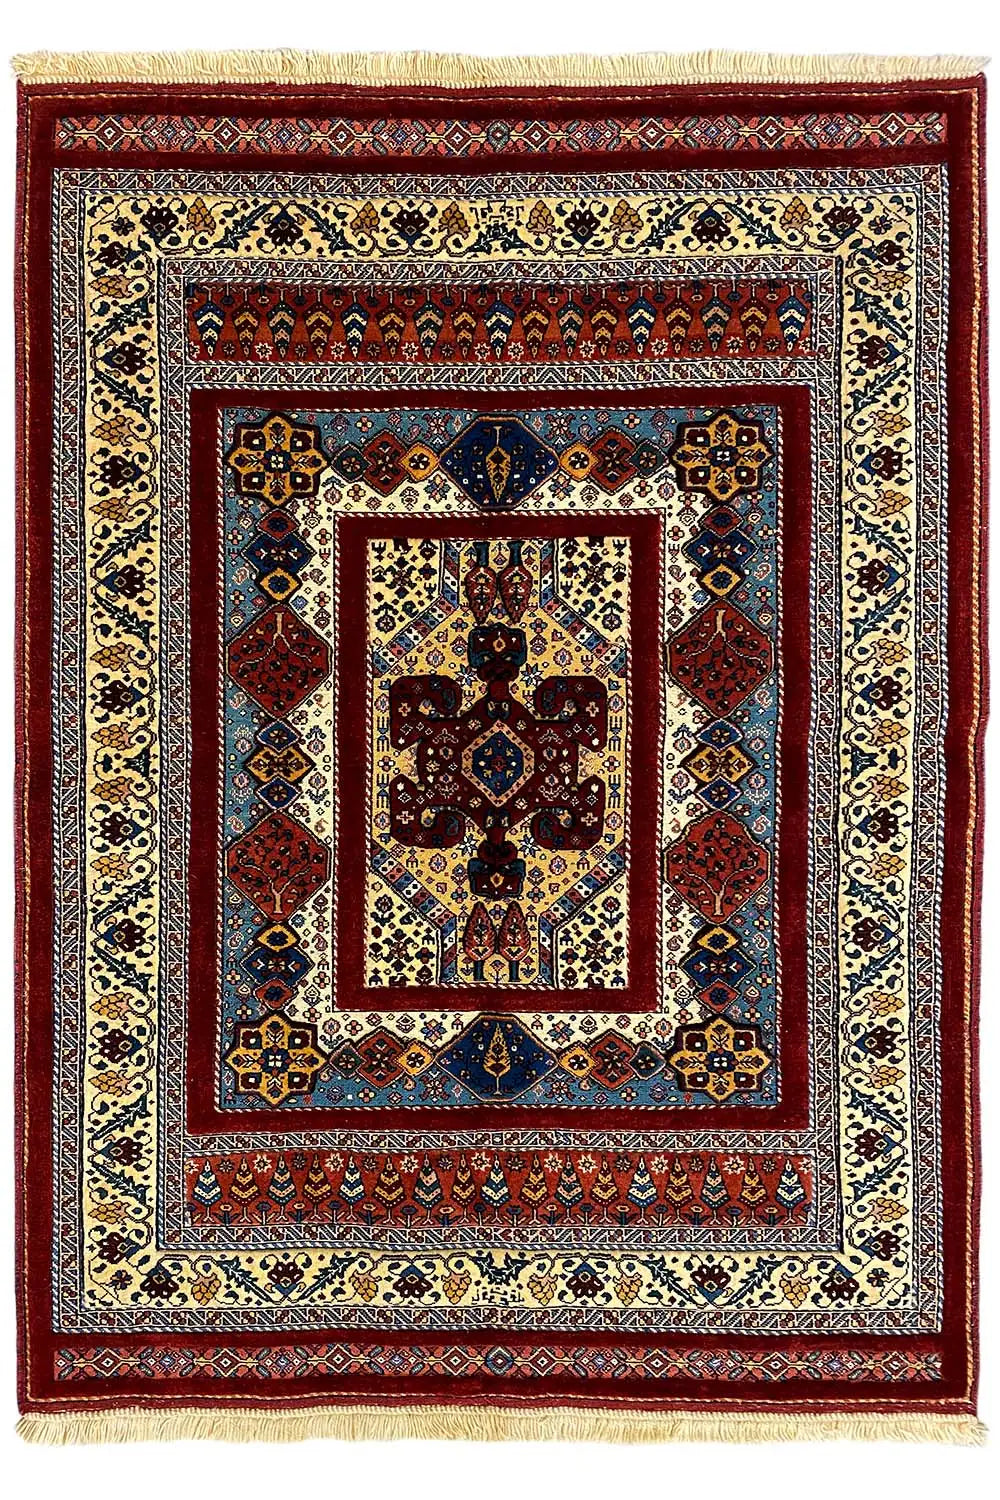 Soumakh (160x119cm) - German Carpet Shop